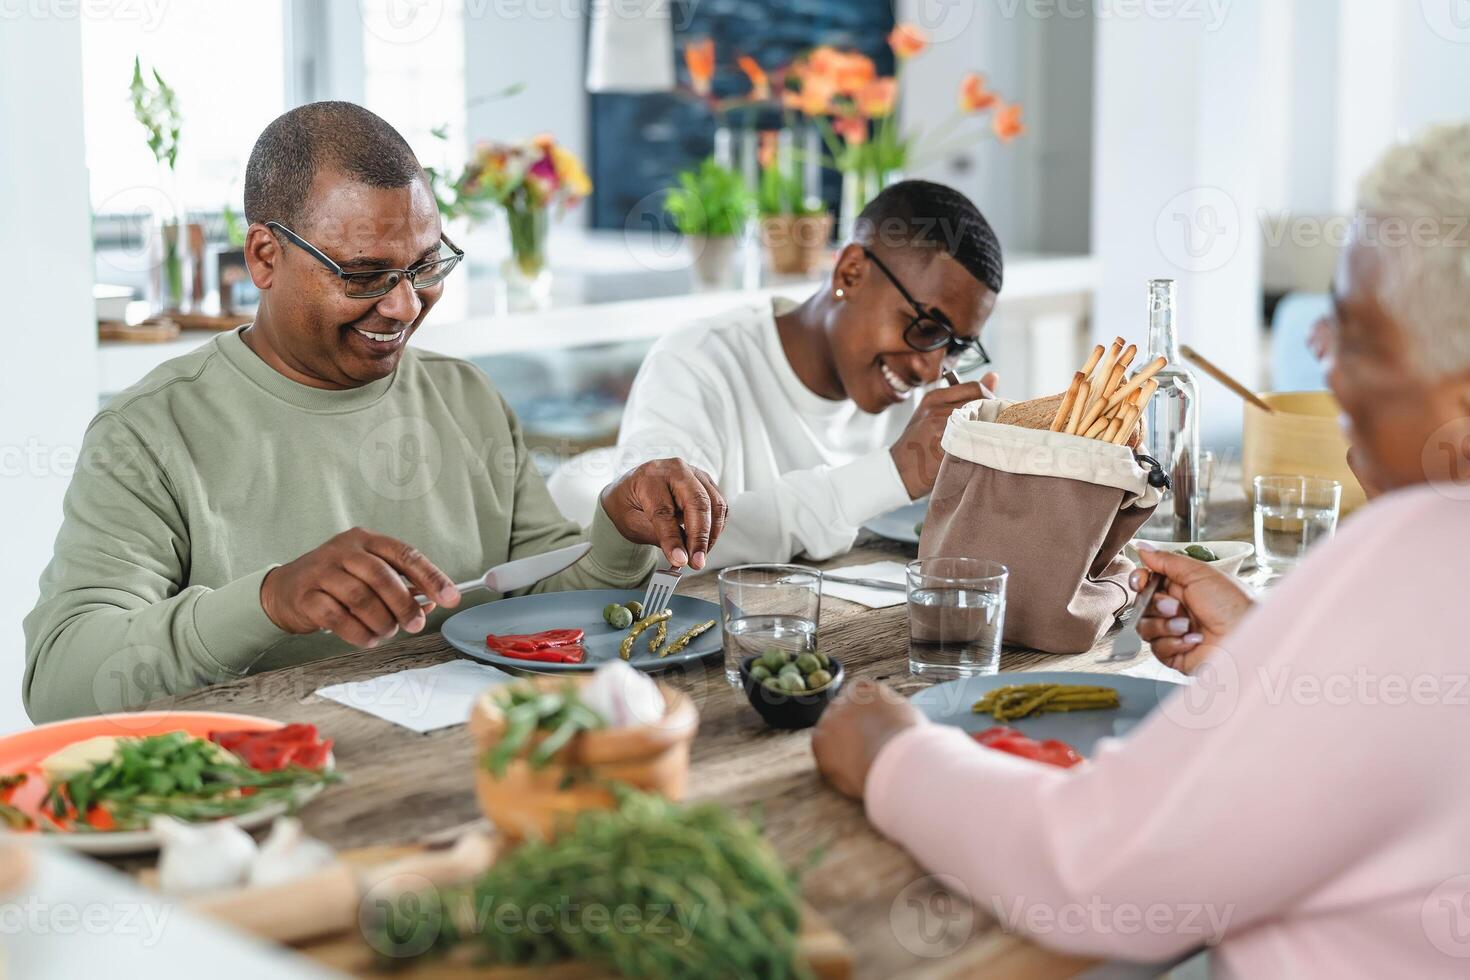 content afro Latin famille en mangeant en bonne santé le déjeuner avec Frais des légumes à Accueil - nourriture et Parents unité concept photo